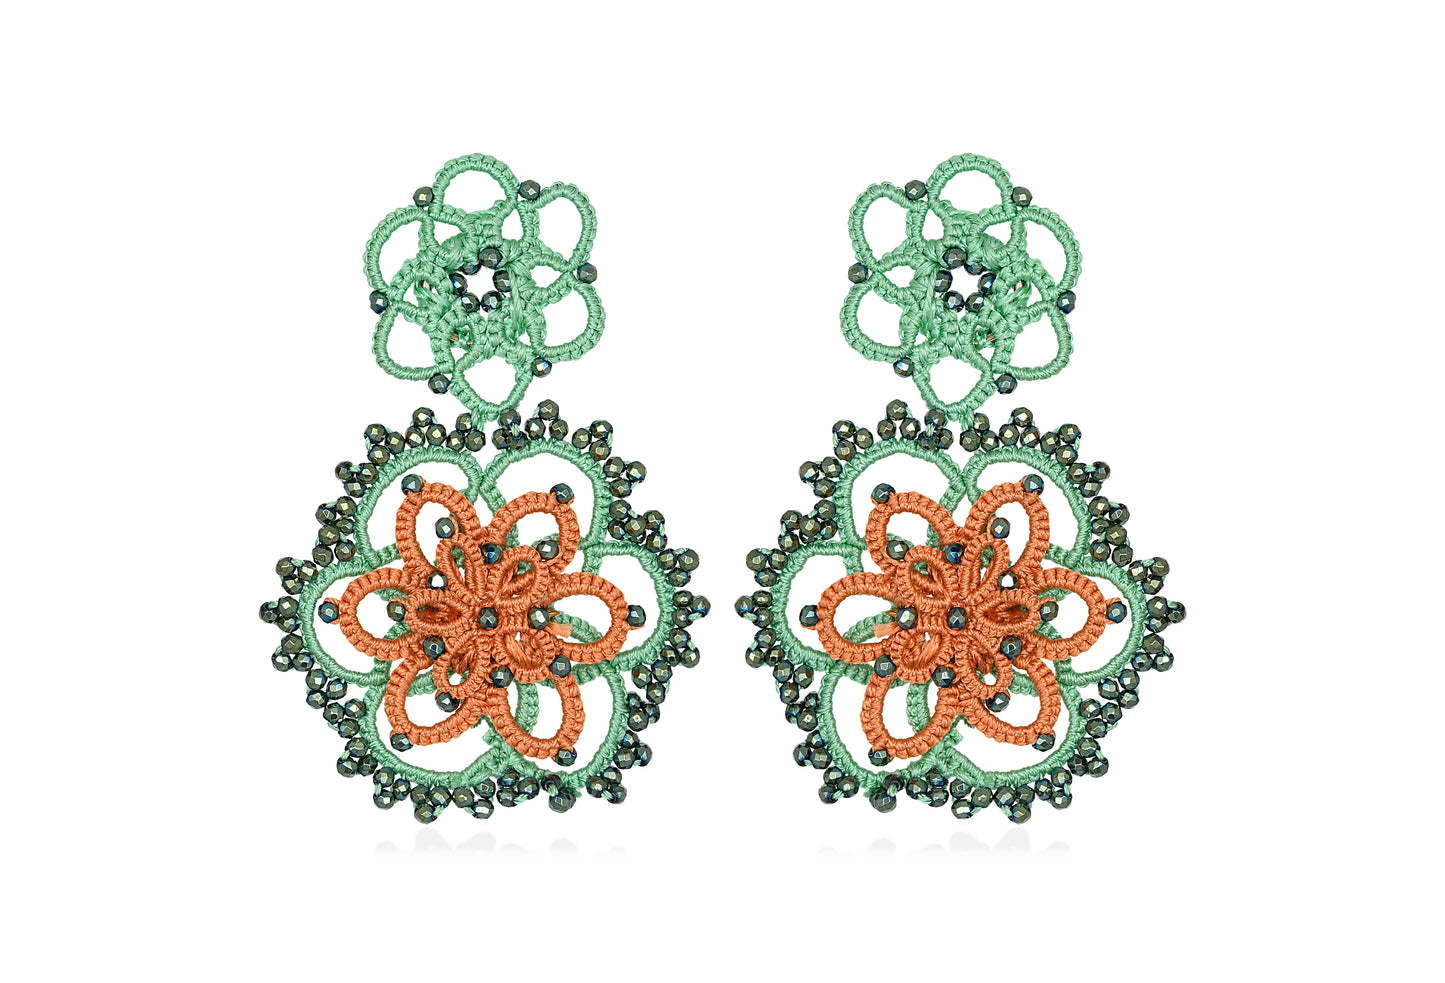 Vintage Bloom bi-tone lace earrings, green orange dark grey